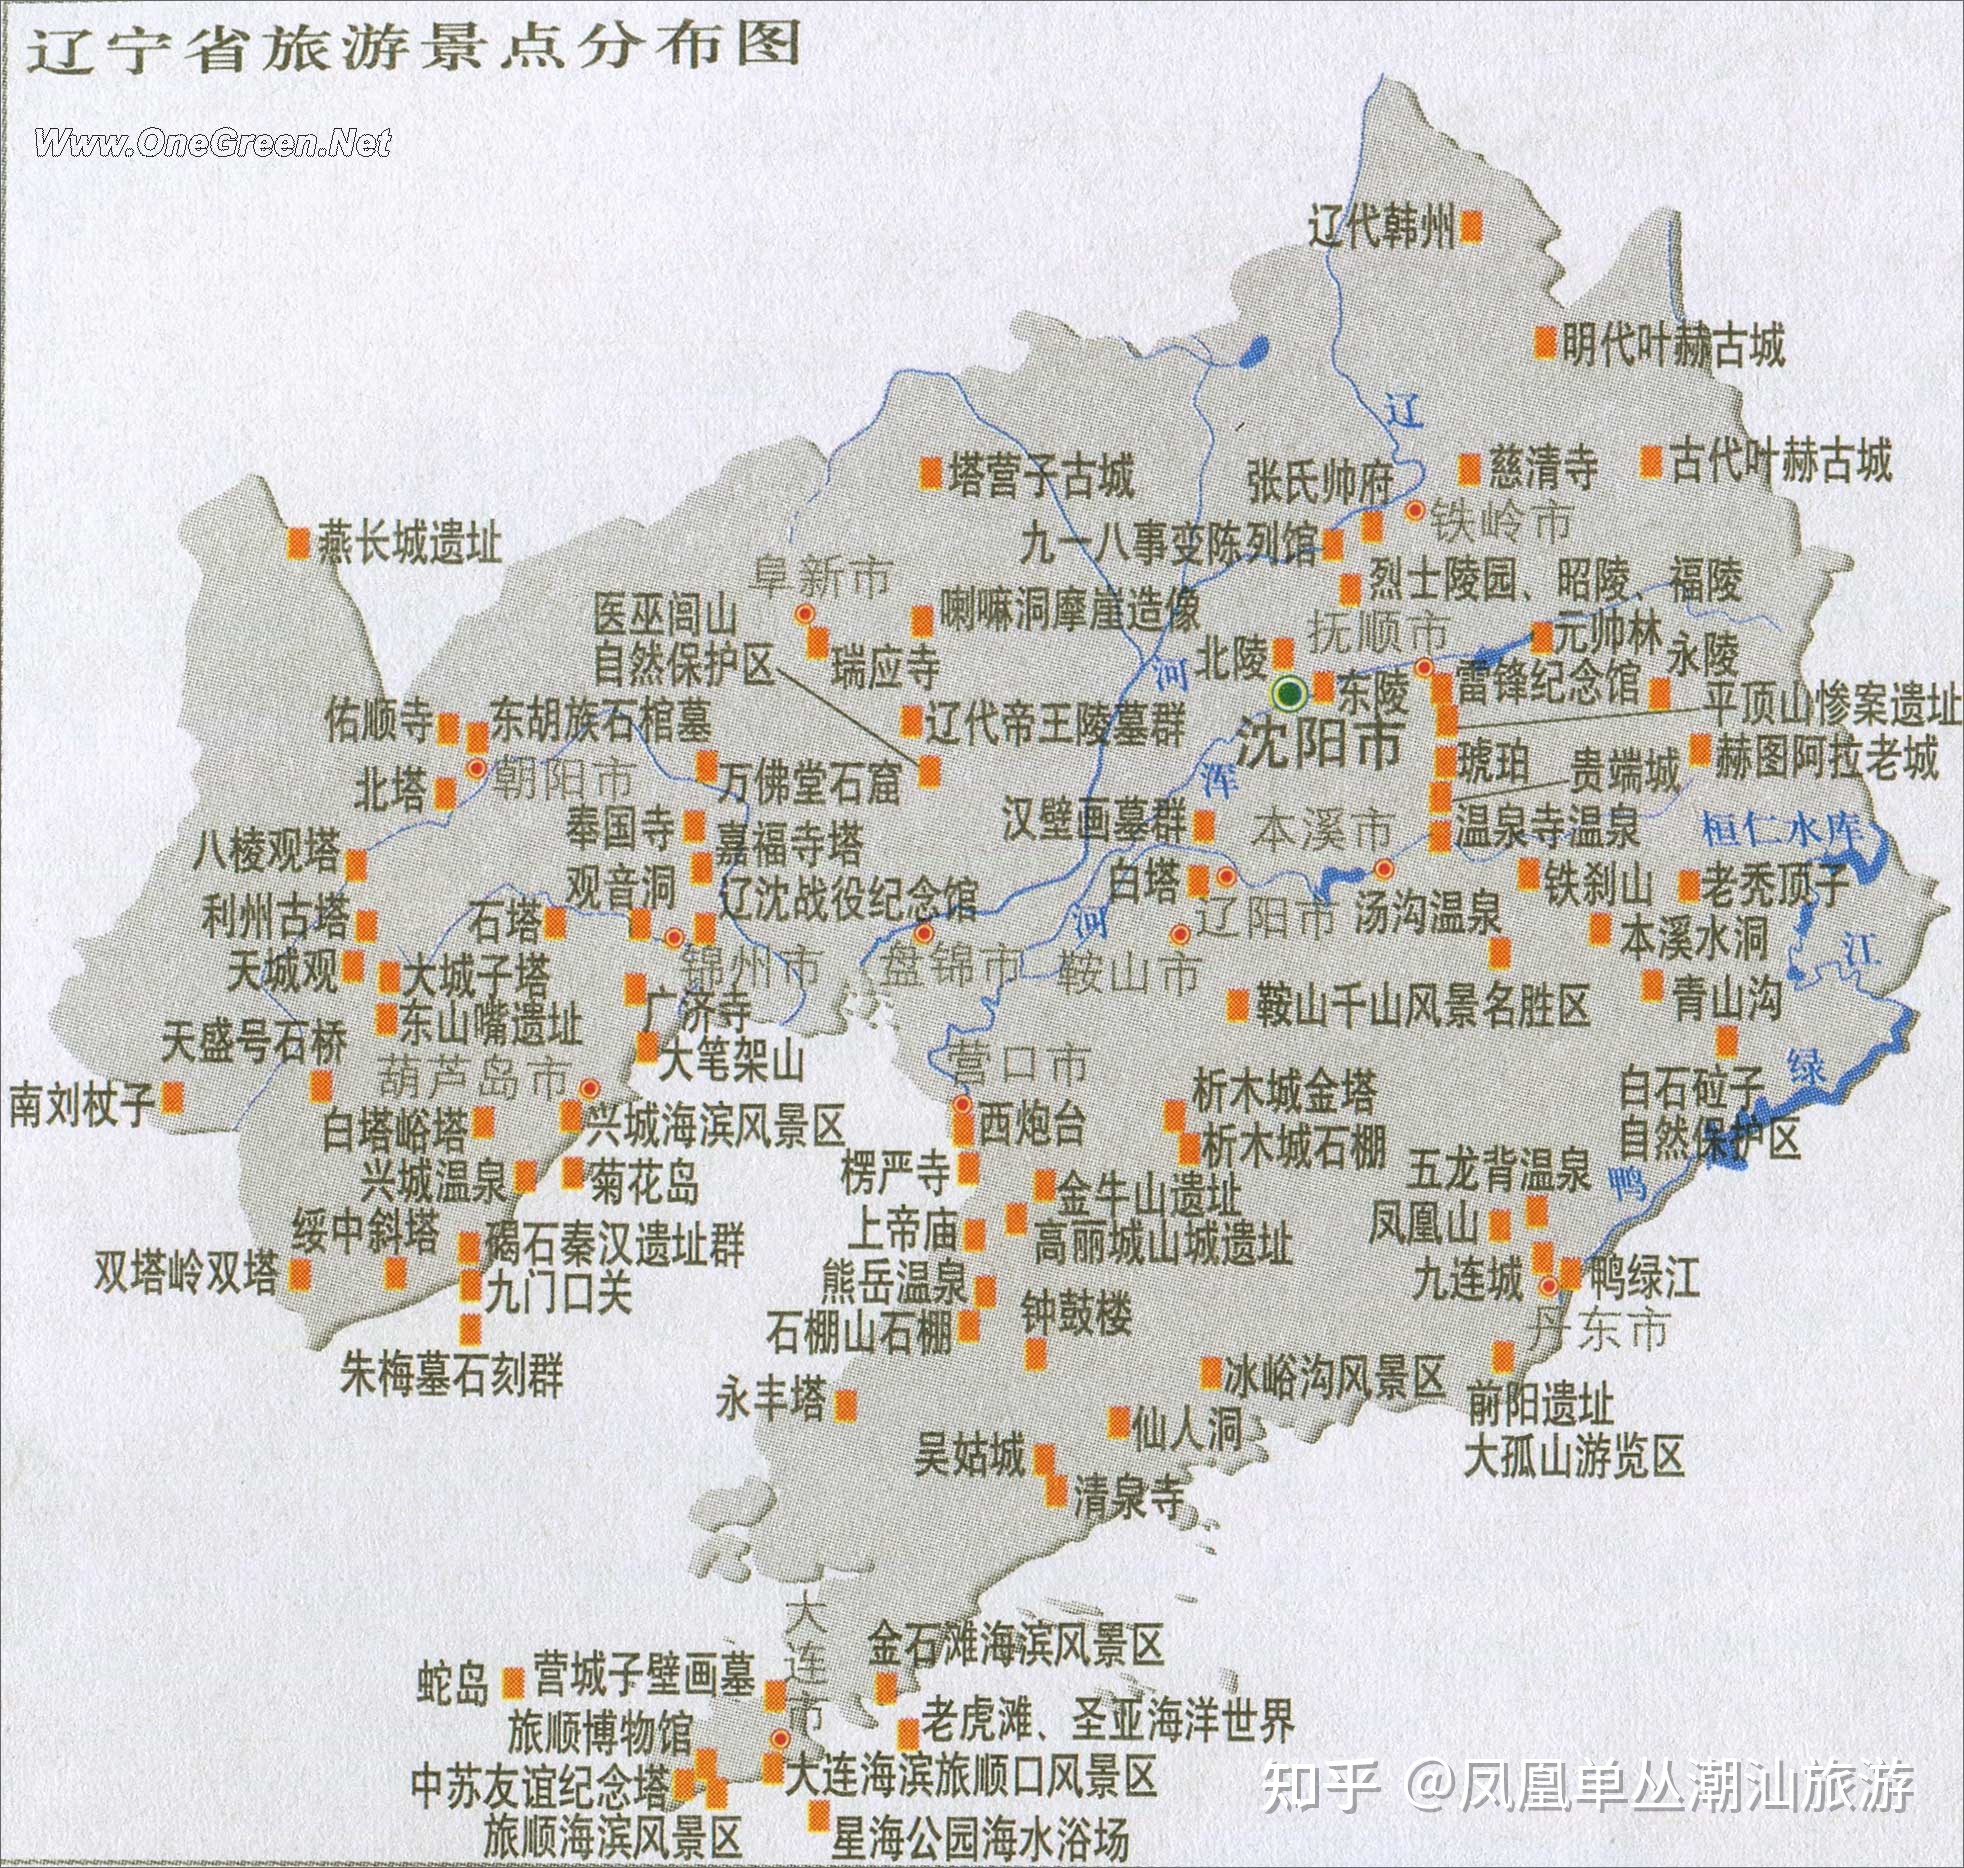 中国最美旅游景点高清地图(汇聚3000多个景点,可下载收藏  